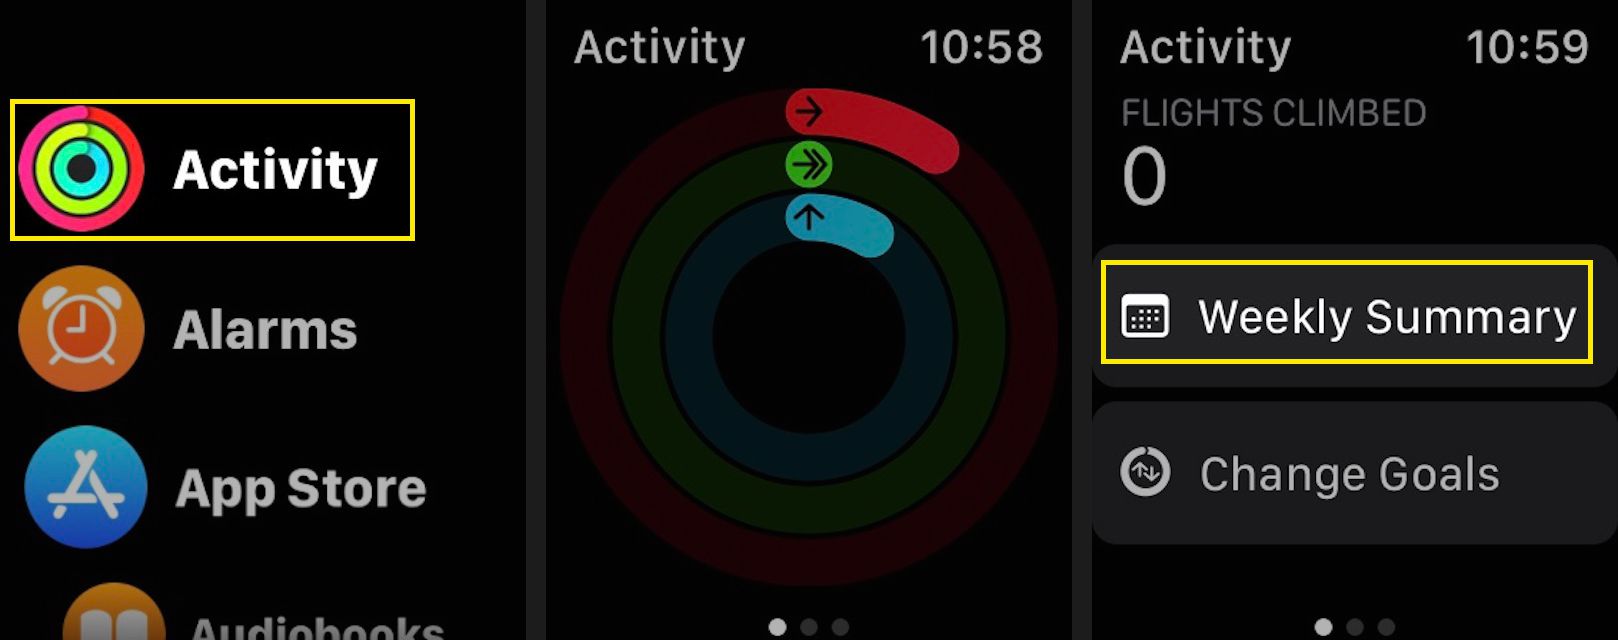 Zobrazte své týdenní shrnutí v aplikaci Apple Watch Activity